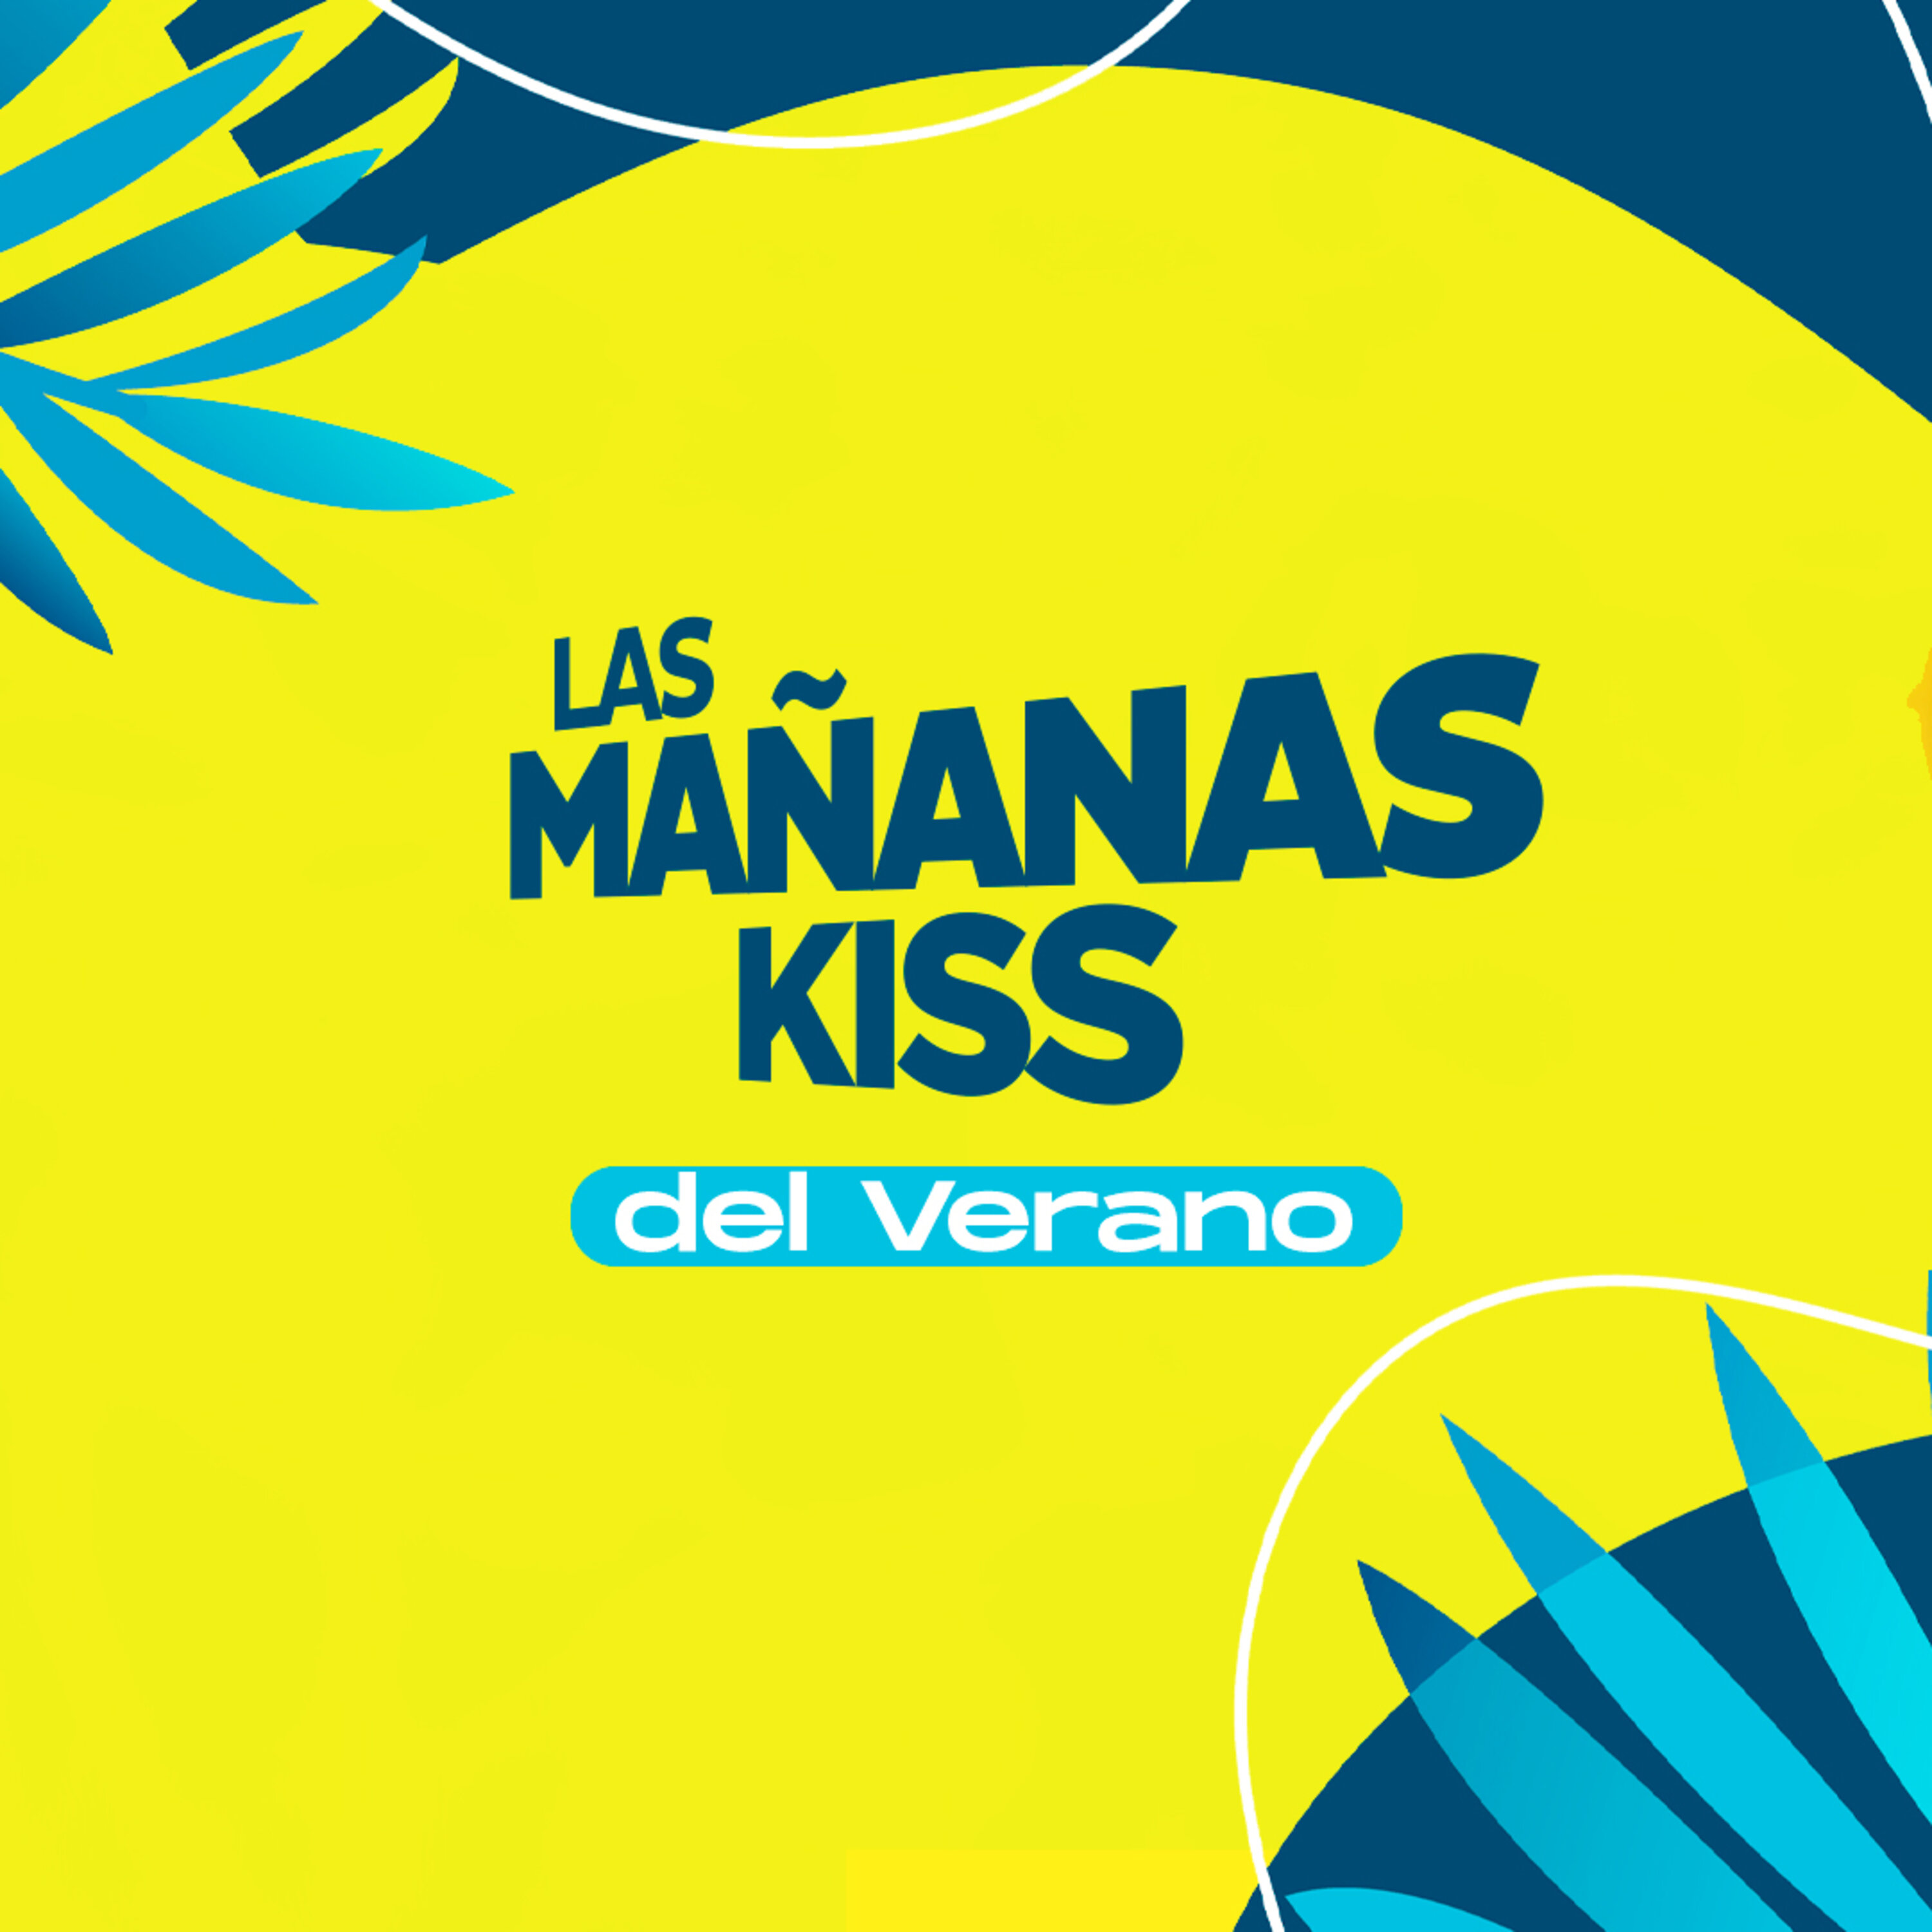 Las Mañanas KISS del Verano (16/08/2022 - 07-08h)